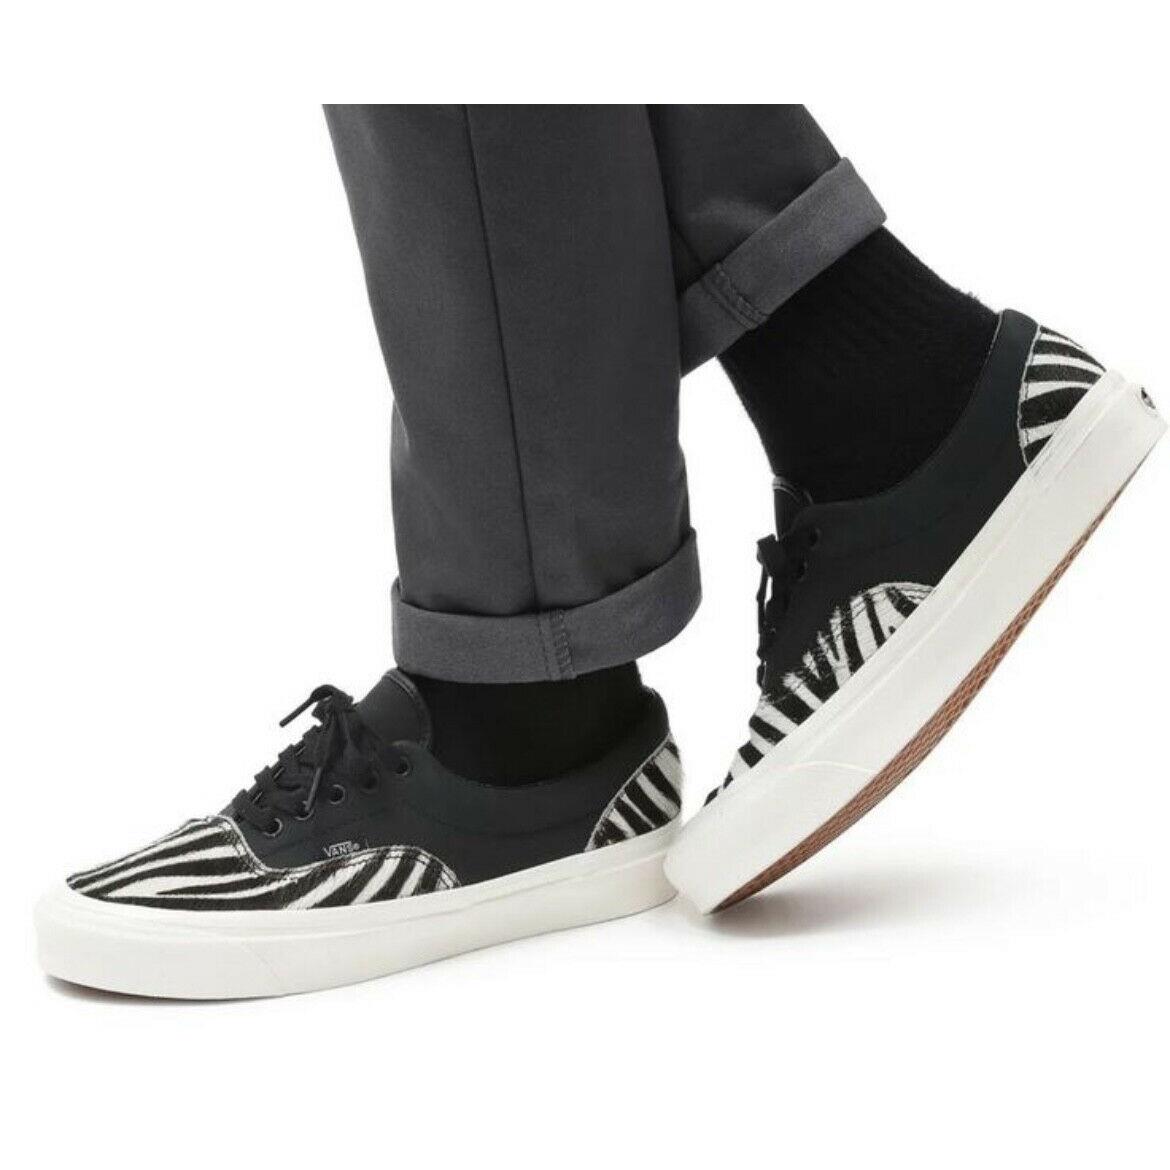 Vans Era 95 Dx Mens Casual Skate Shoe Black White Zebra Fashion Trainer Sneaker - Black White